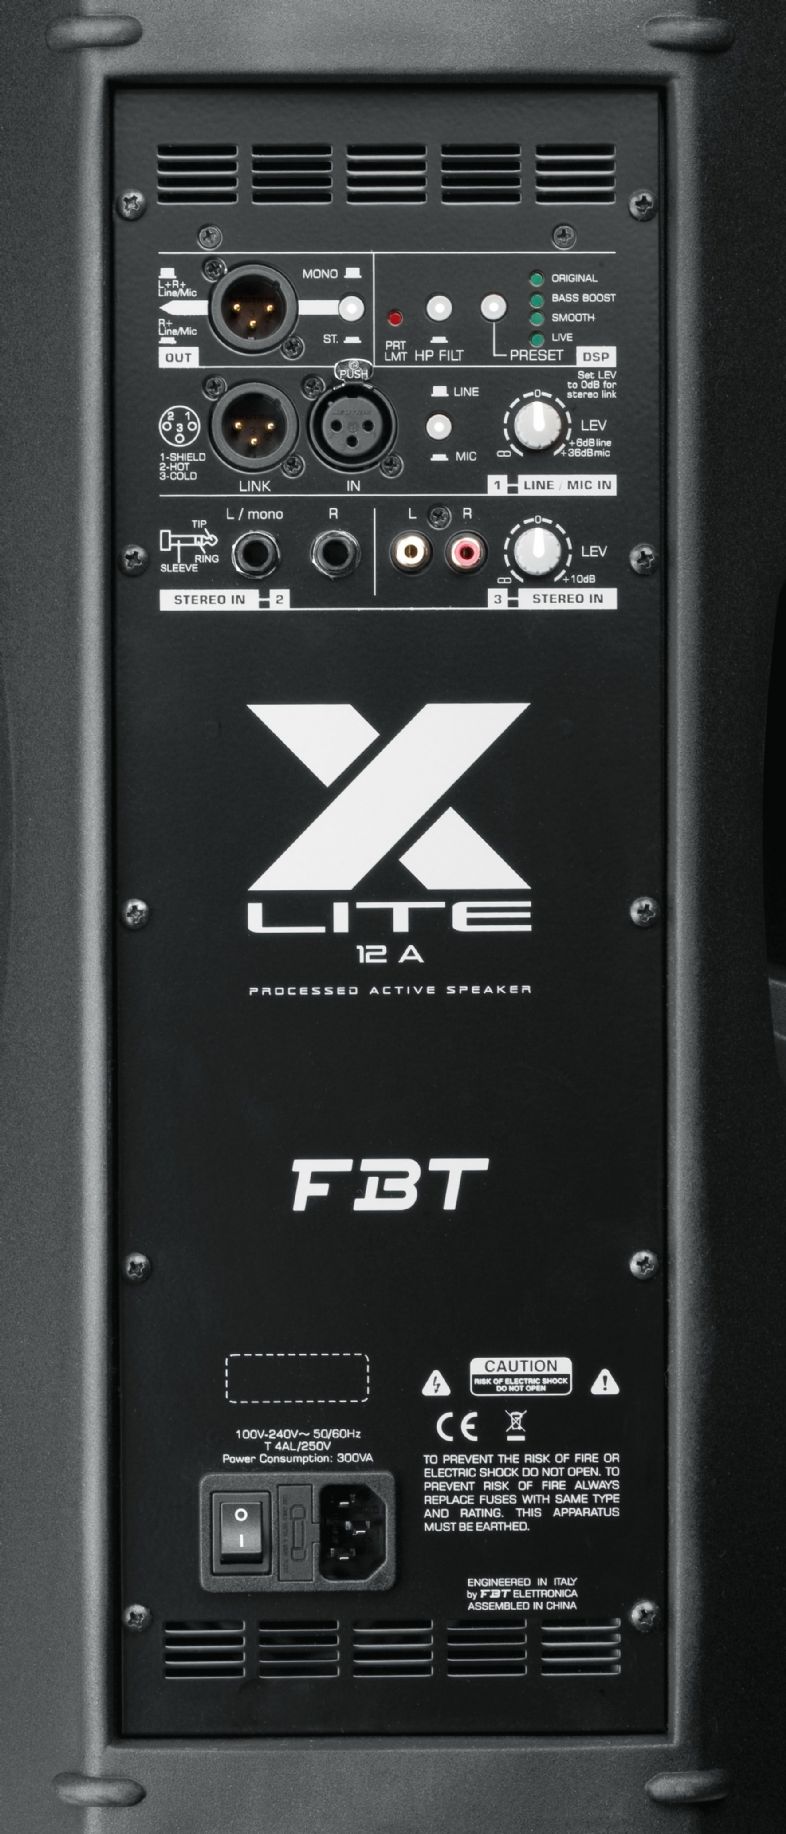 FBT X-LITE 12A